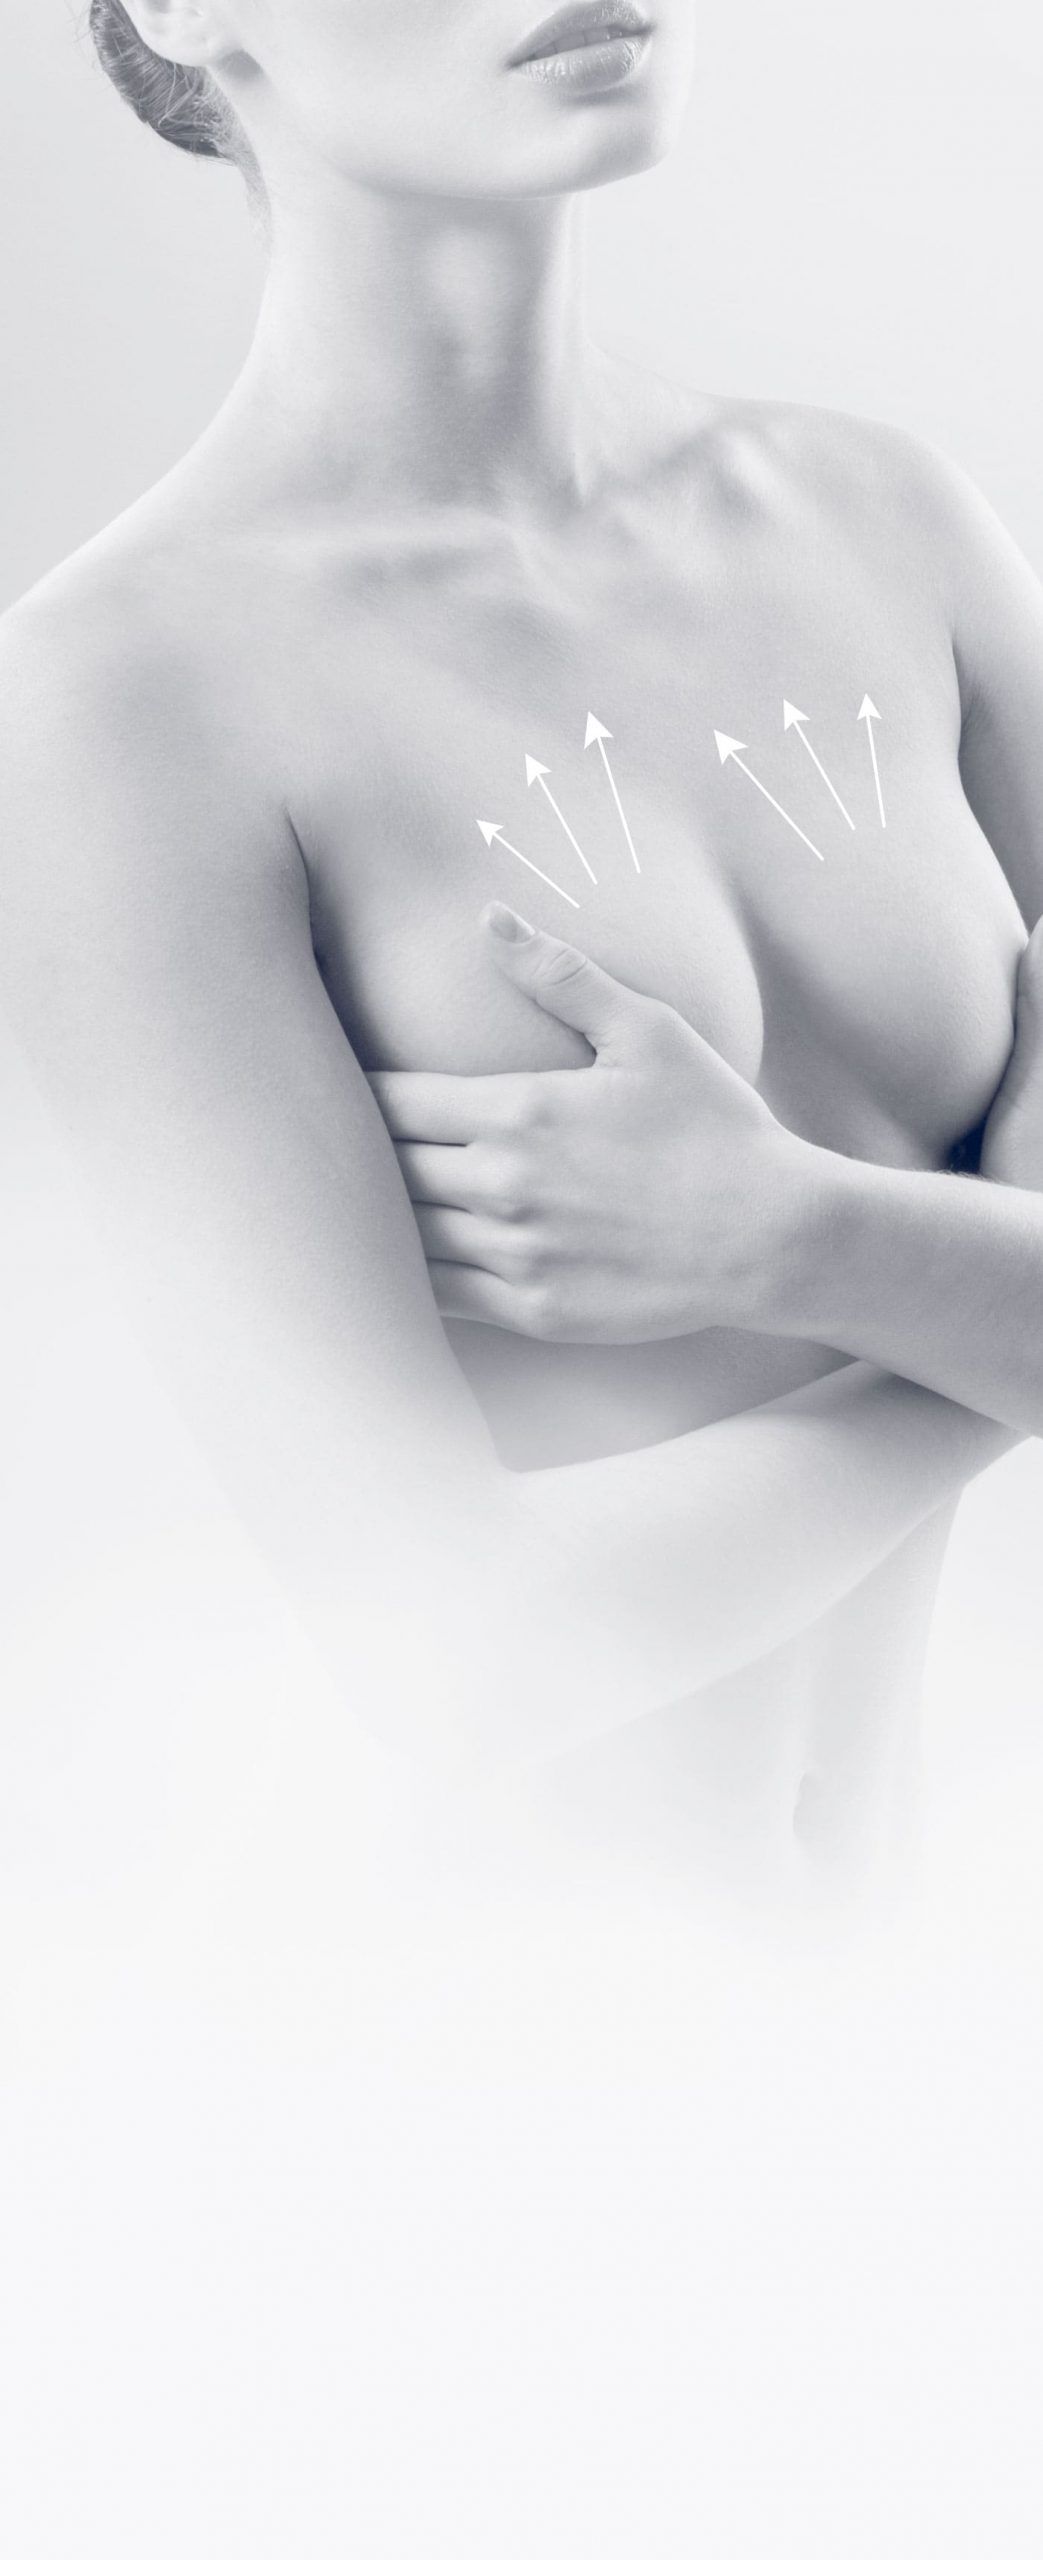 Lifting des seins à Cannes - Correction de la ptose mammaire - Dr Laveaux